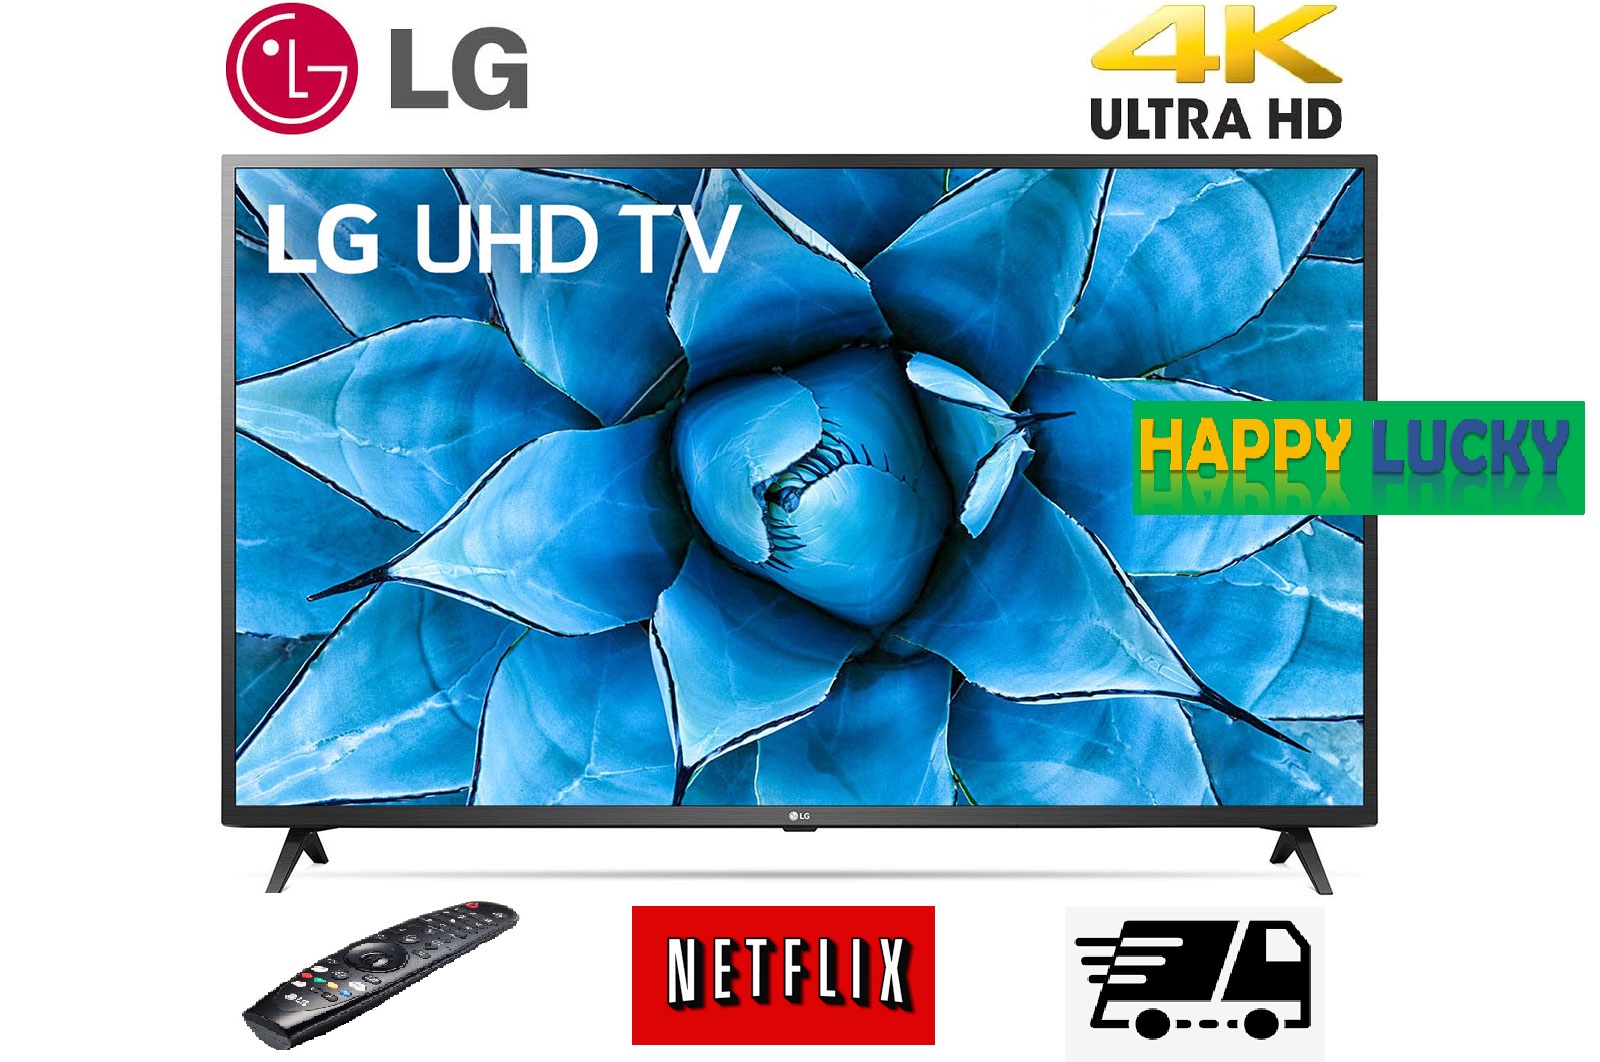 LG 4K Smart TV UHD รุ่น 50UN7300 | HDMI 2.1 | LG ThinQ AI | Airplay2 &
Homekit